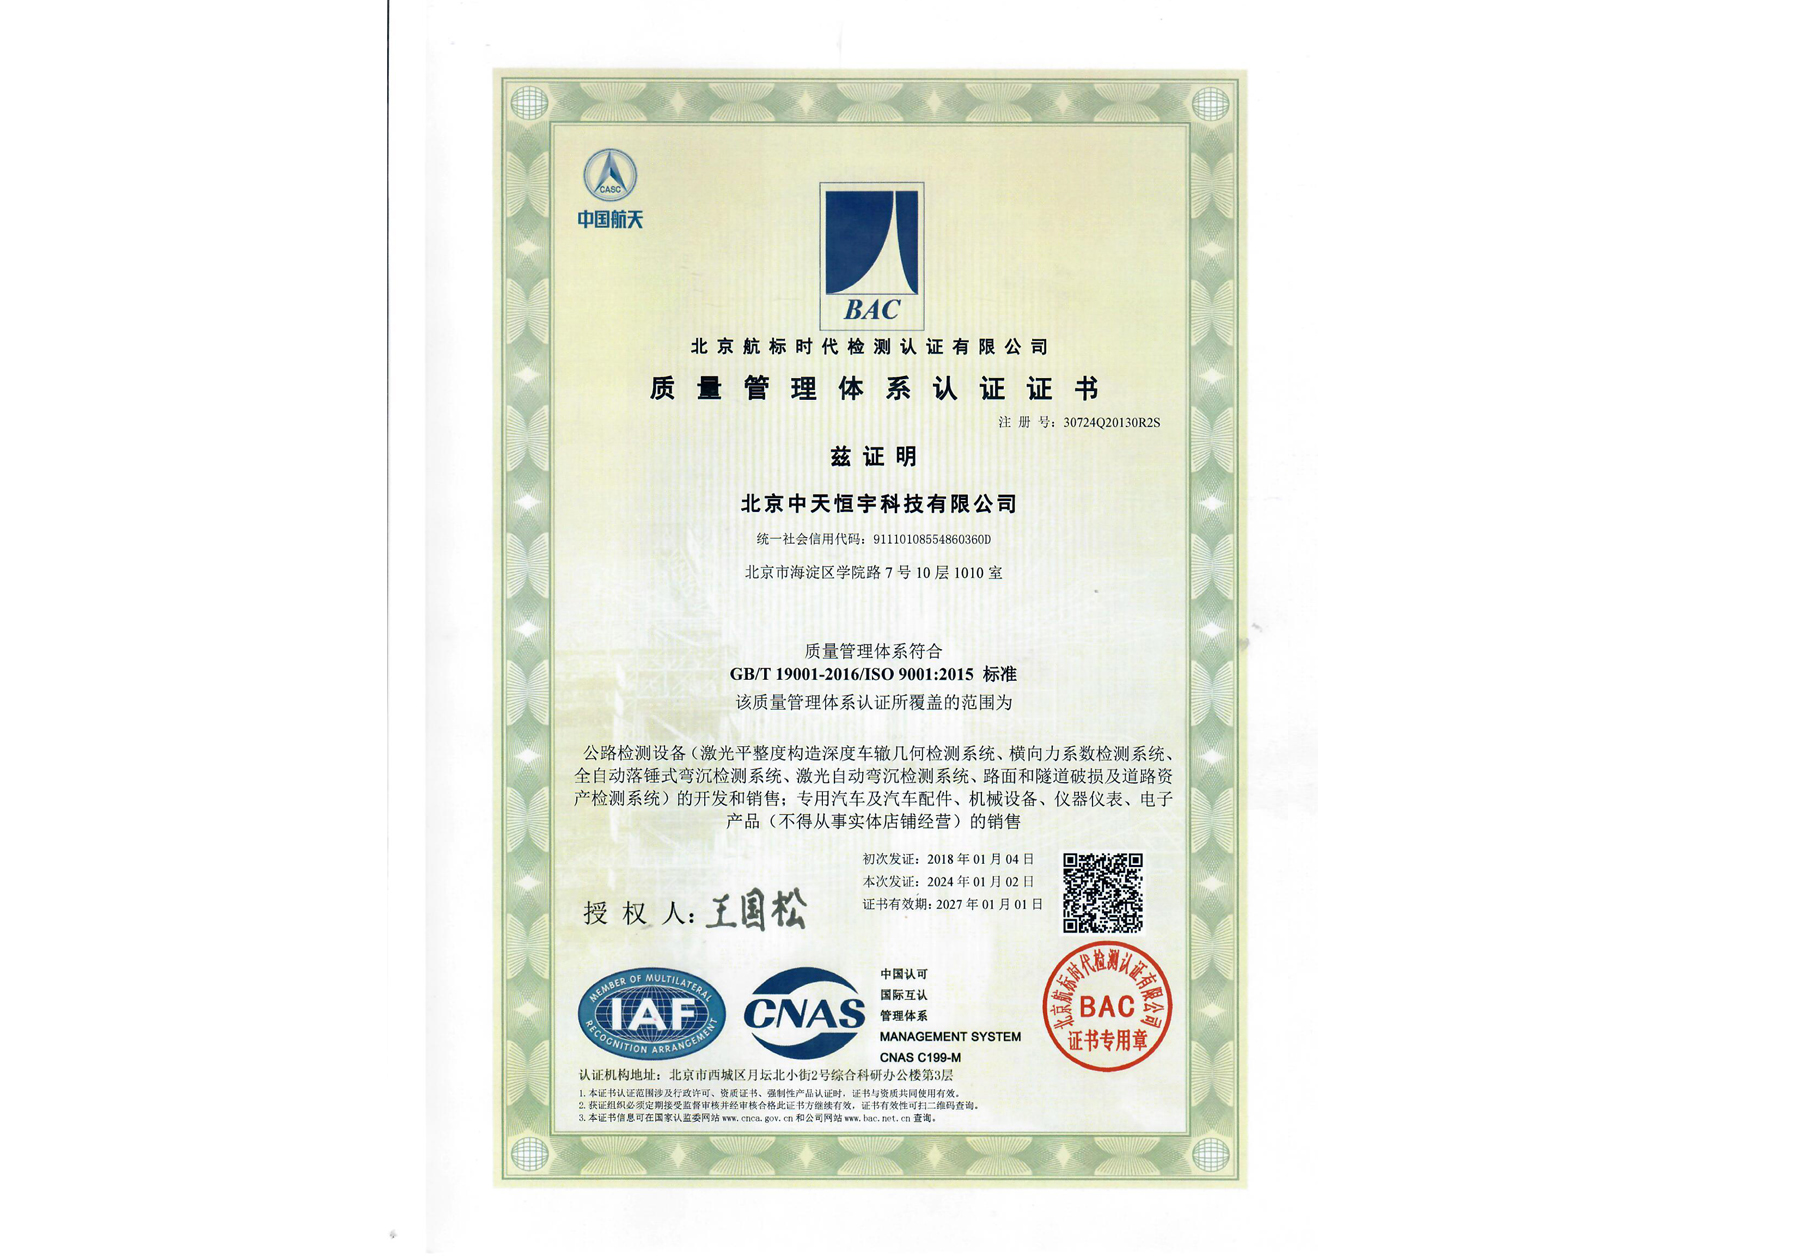 ISO 9001:2015质量管理体系认证证书